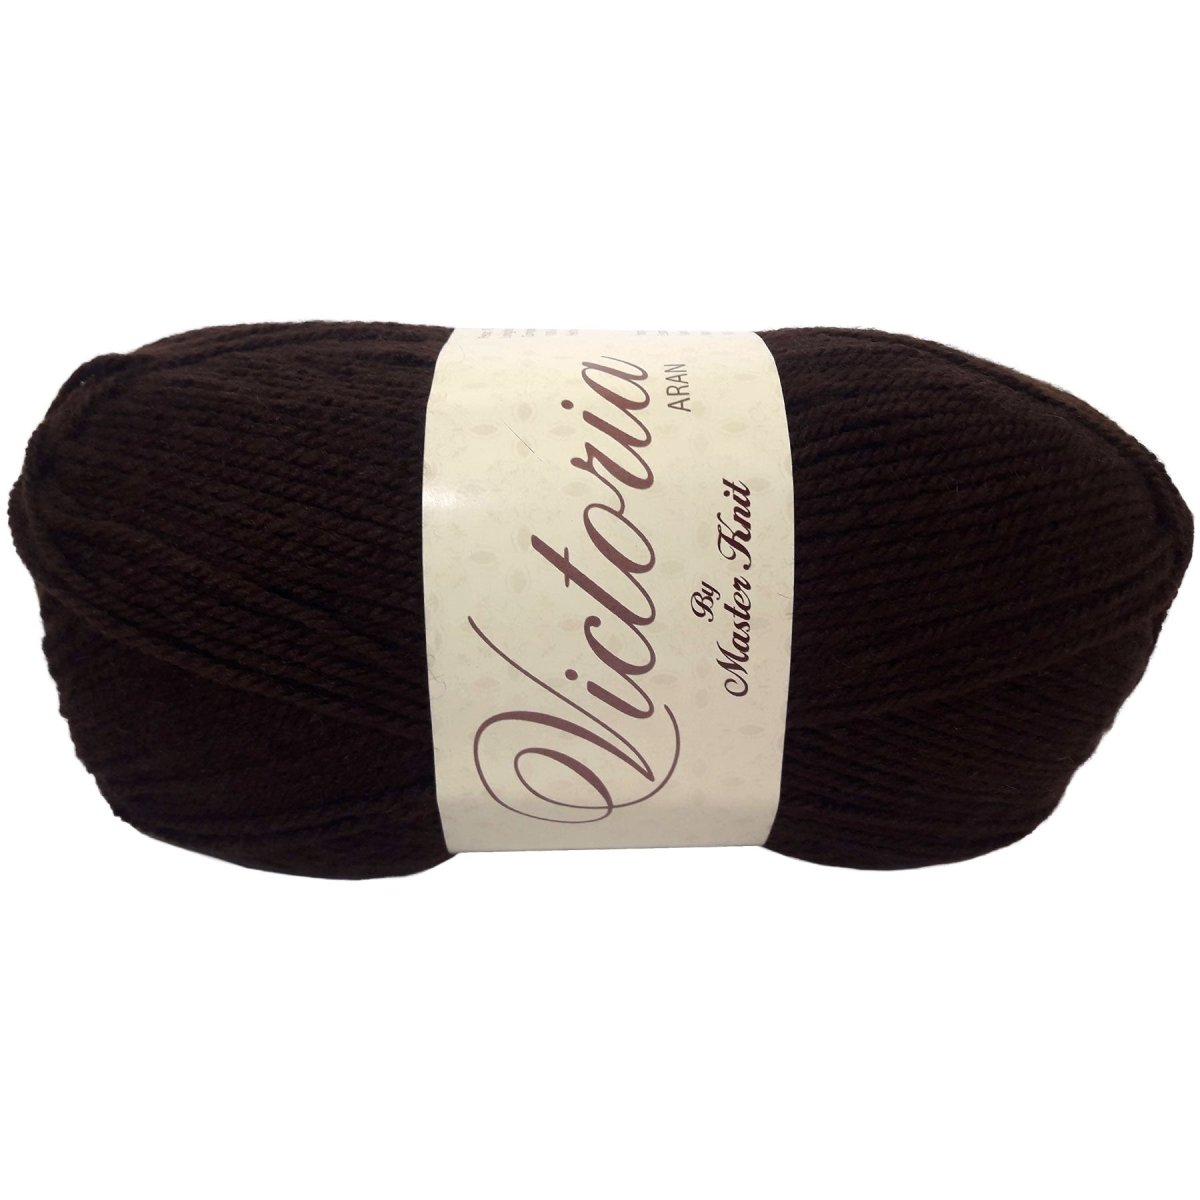 VICTORIA Aran - Crochetstores9120-182acrílico